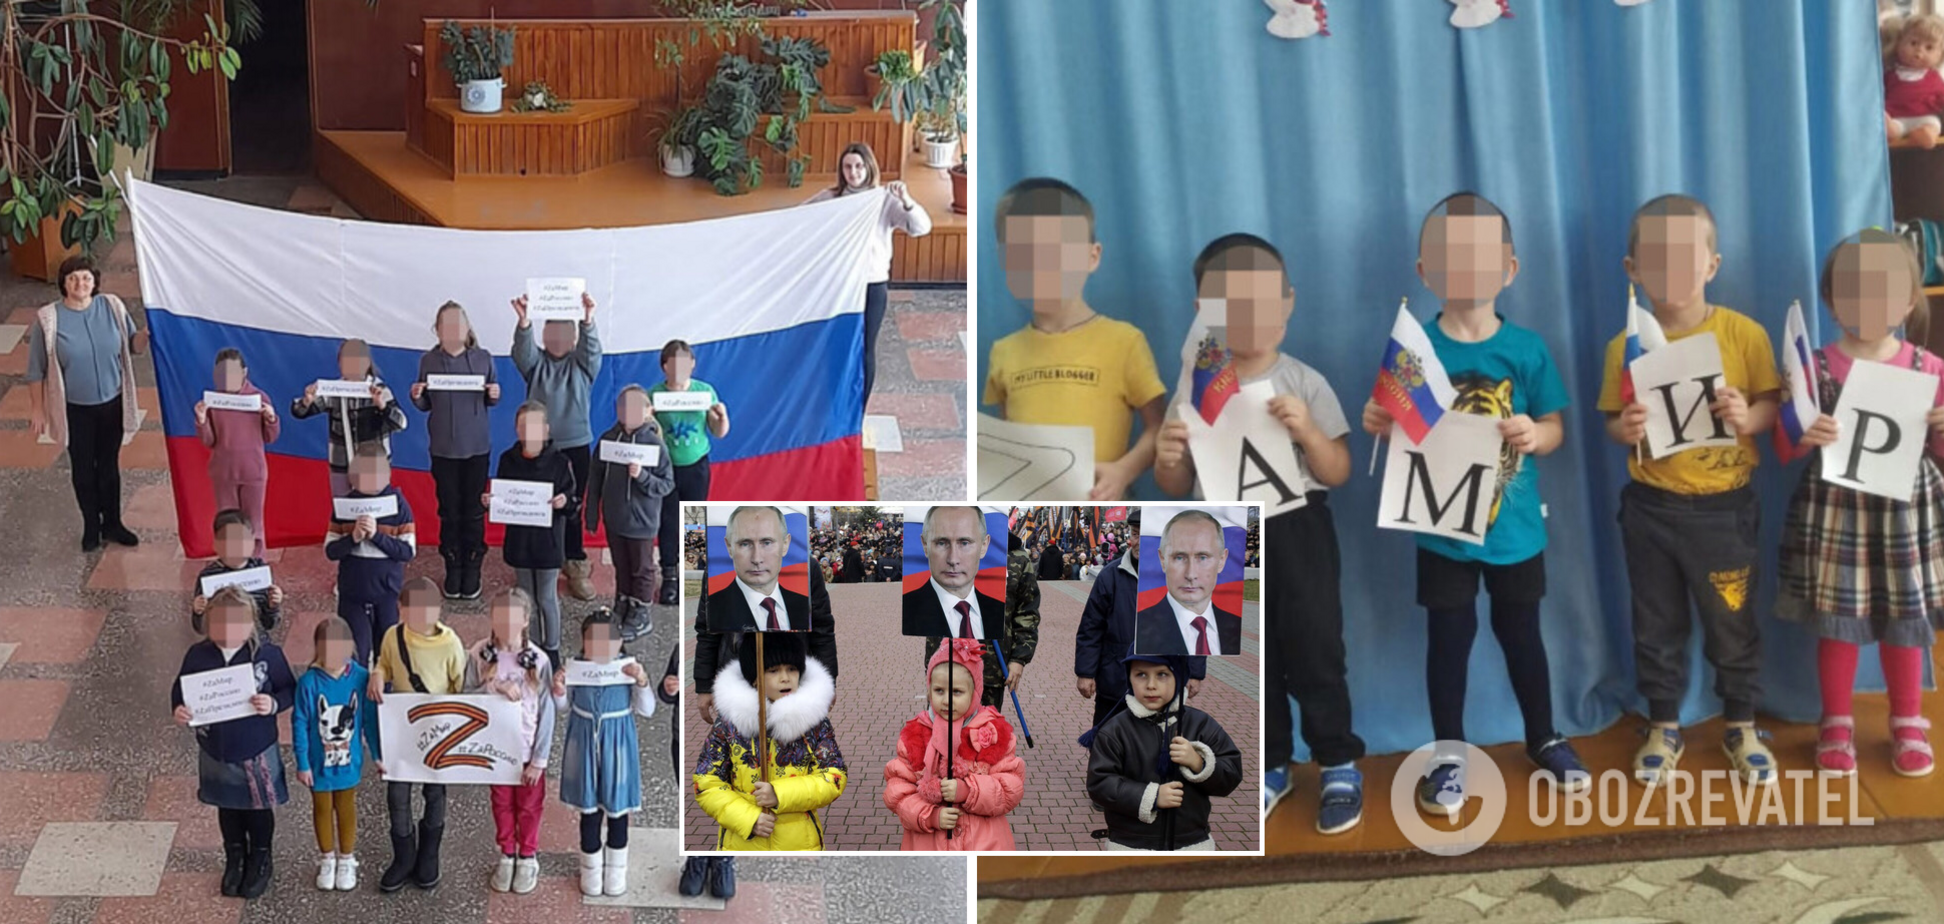 Росія залучає дітей до підтримки своїх терористичних дій: світова спільнота закликала це зупинити